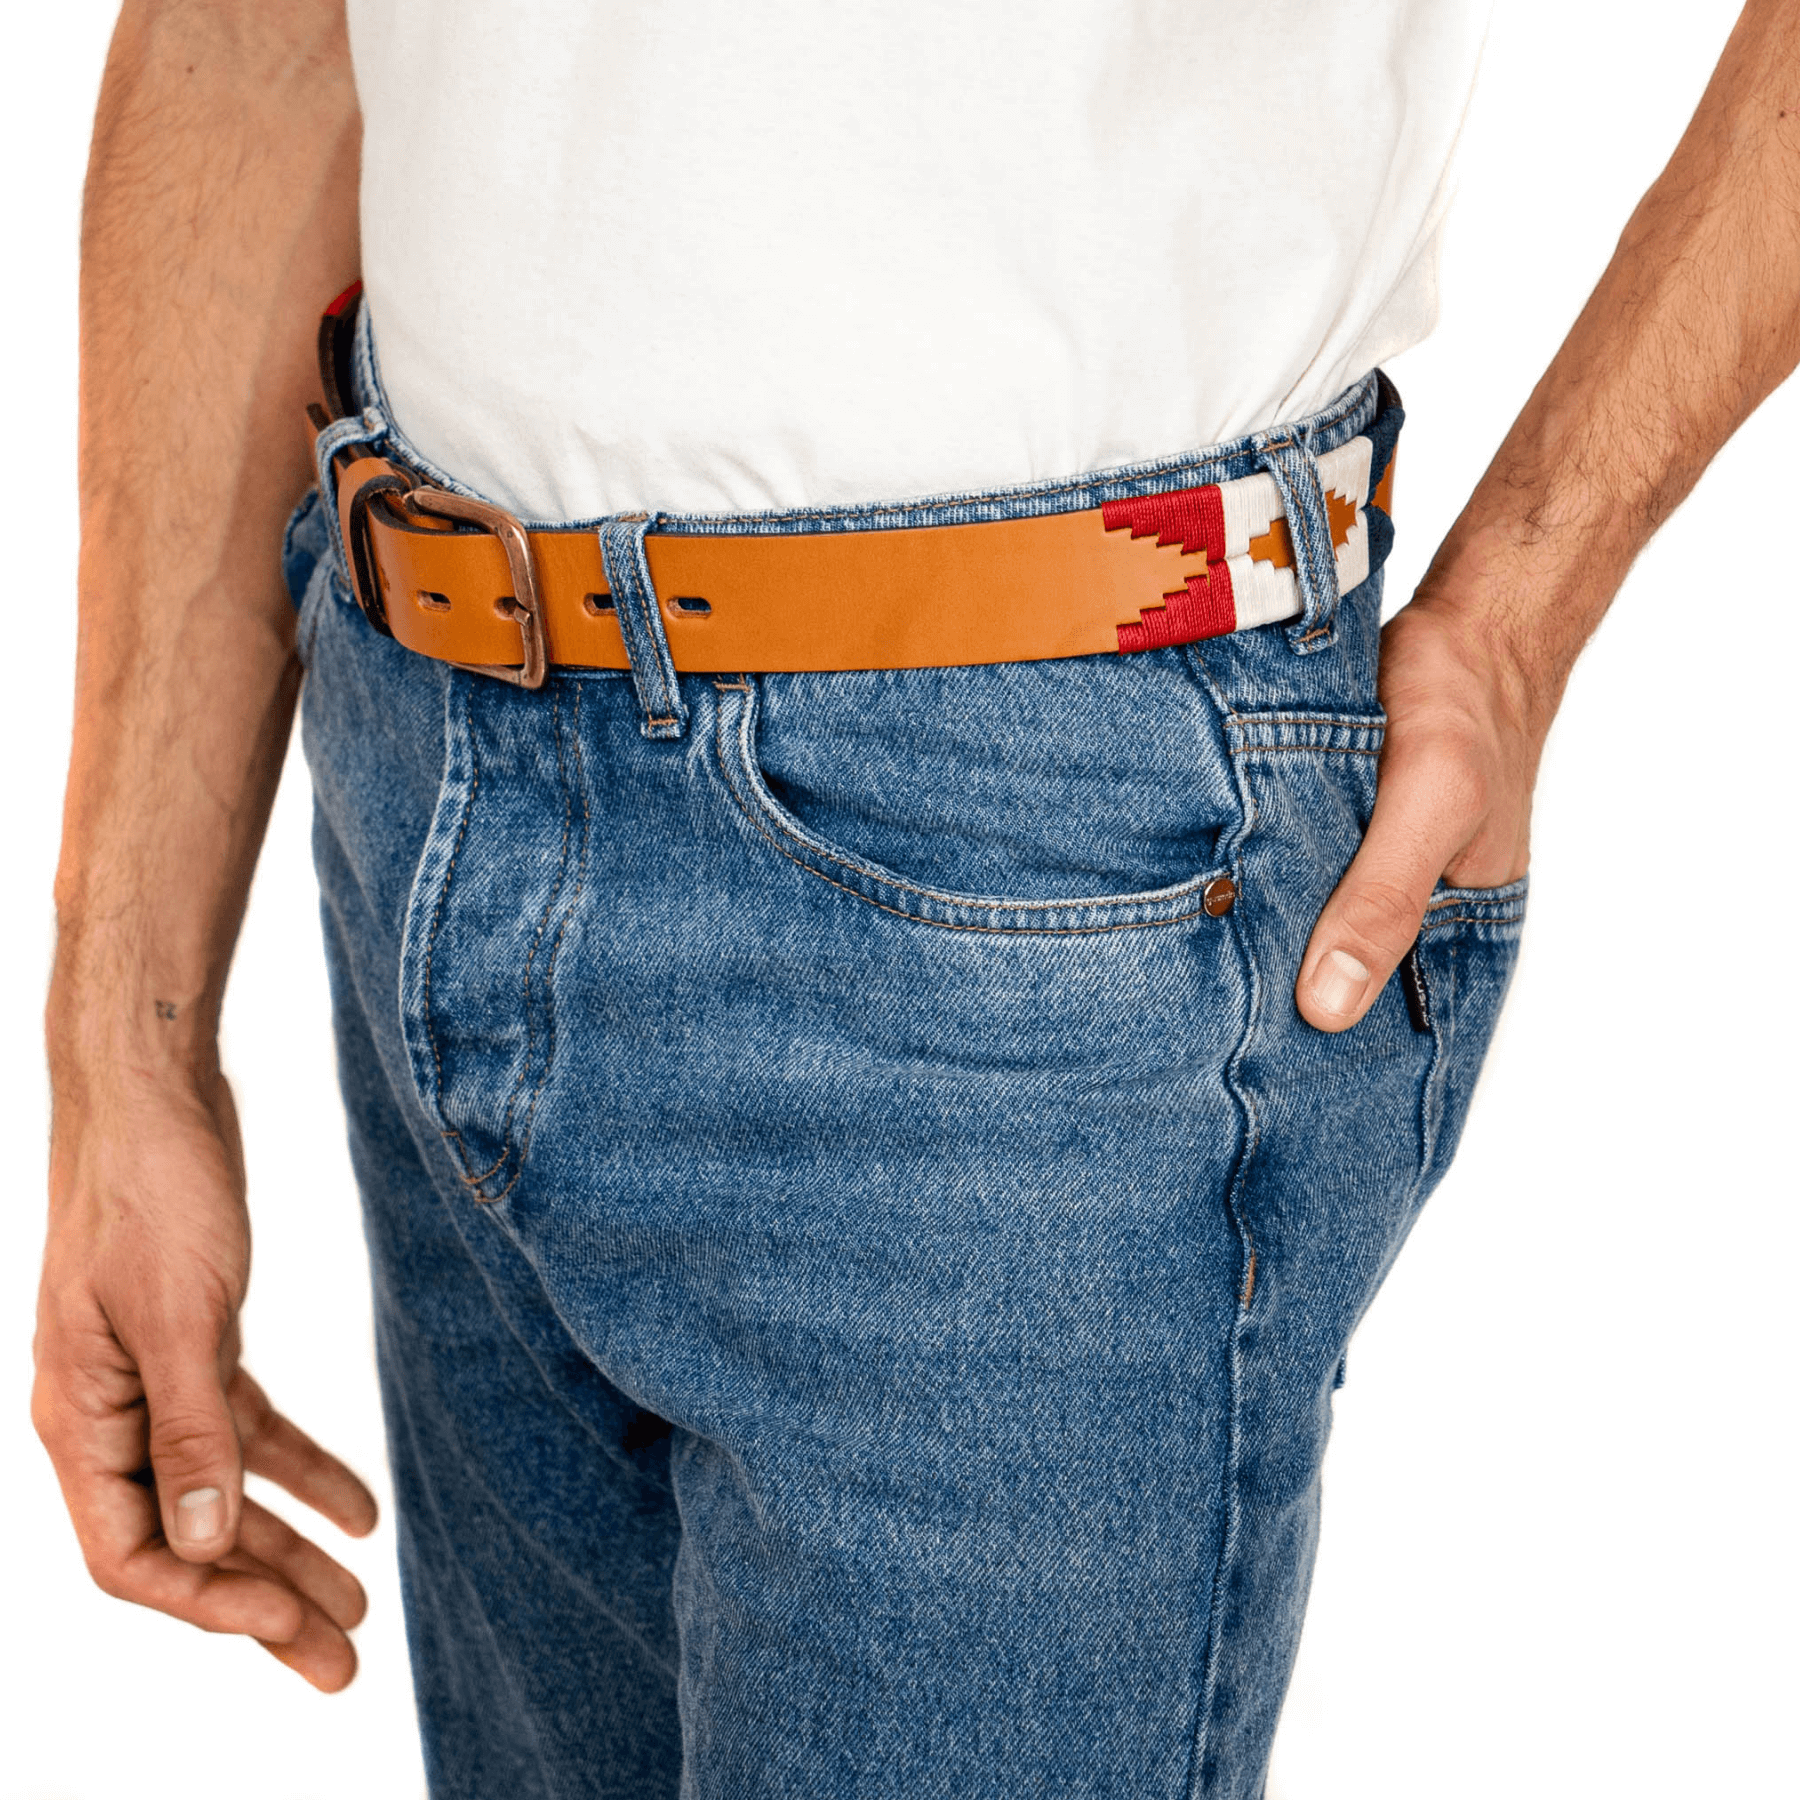 Gaucholife Belts Embroidered Belt (Tan/Multicolor)